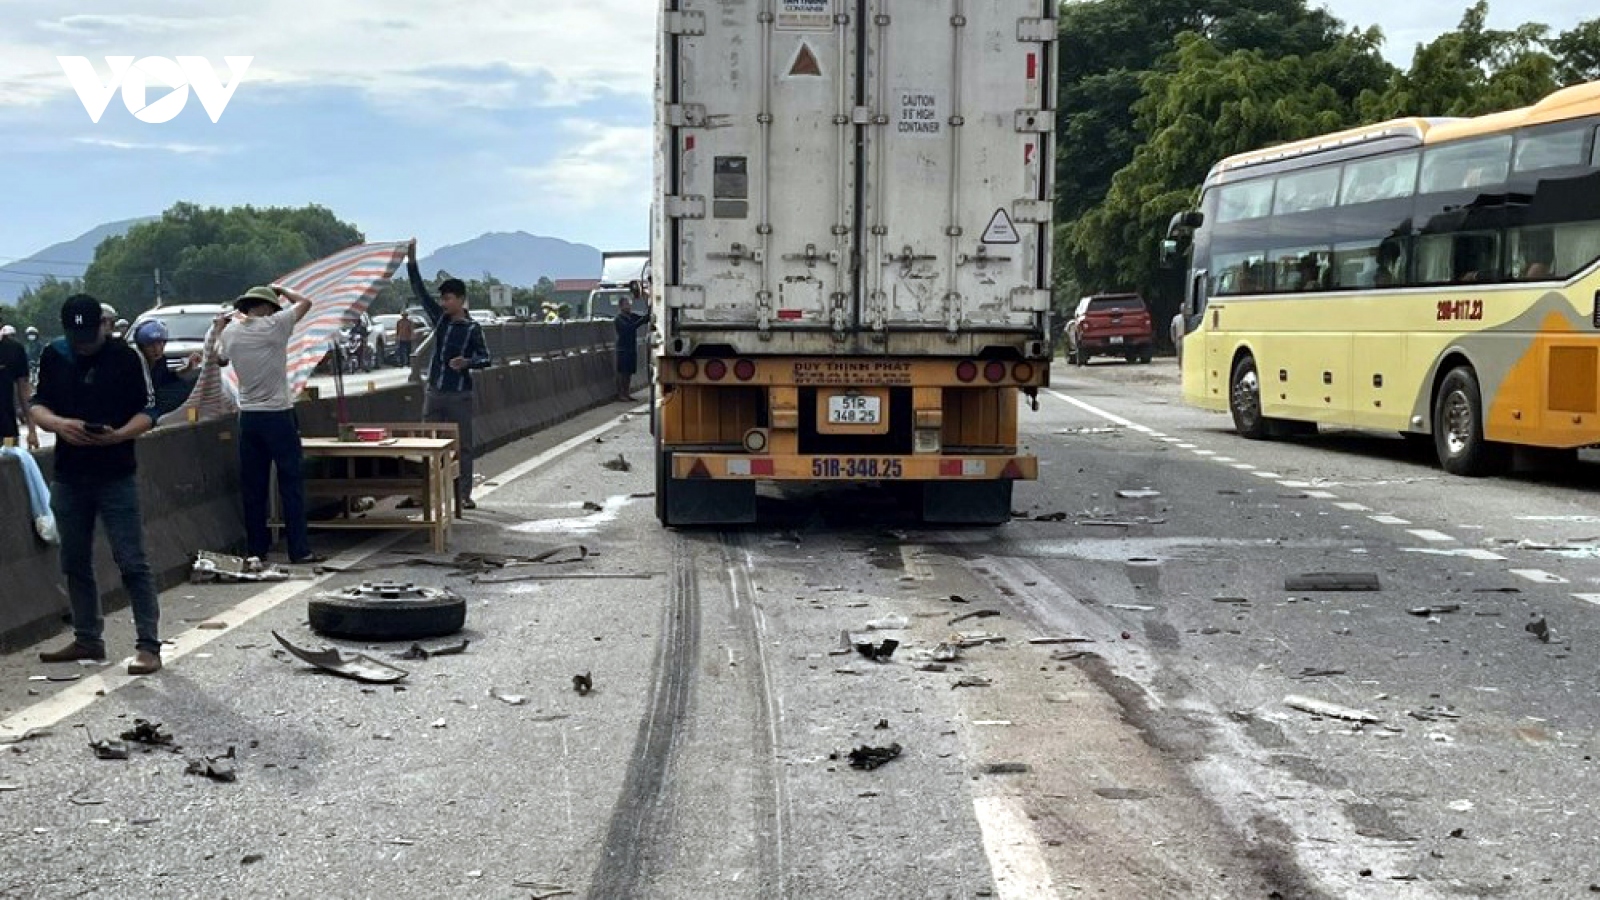 Tai nạn giao thông liên hoàn trên quốc lộ 1A, 3 người tử vong tại chỗ